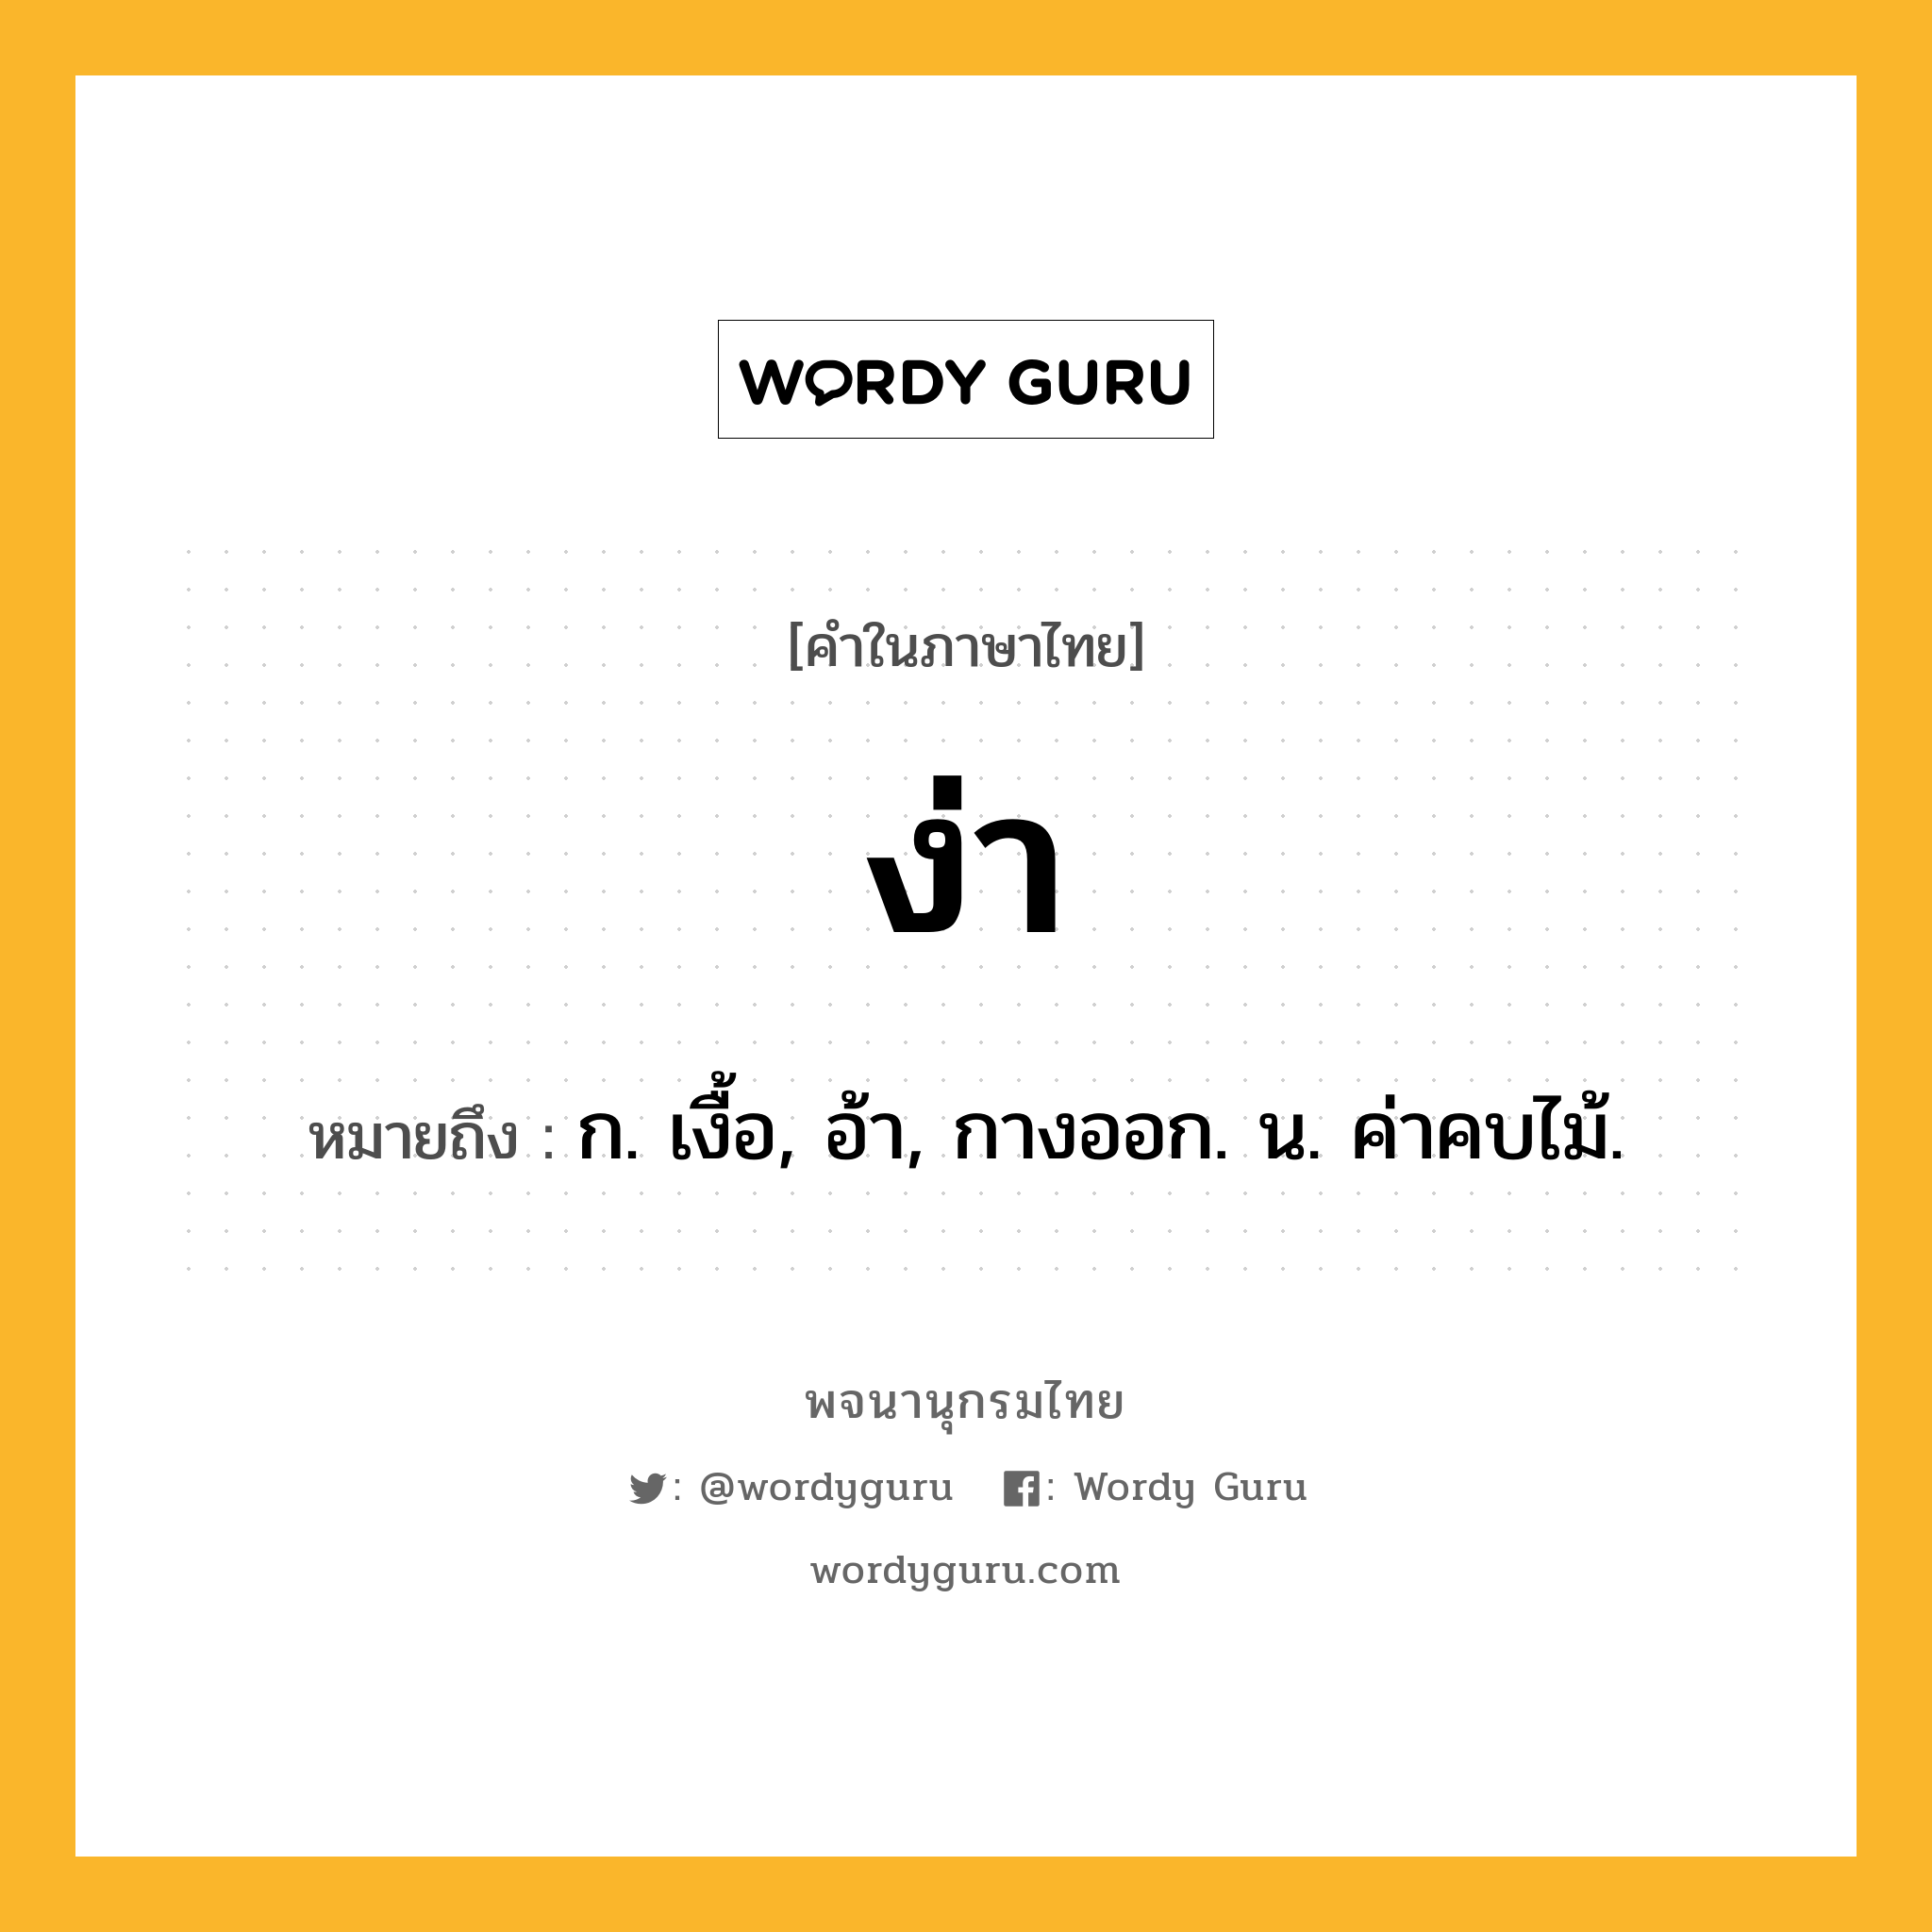 ง่า ความหมาย หมายถึงอะไร?, คำในภาษาไทย ง่า หมายถึง ก. เงื้อ, อ้า, กางออก. น. ค่าคบไม้.